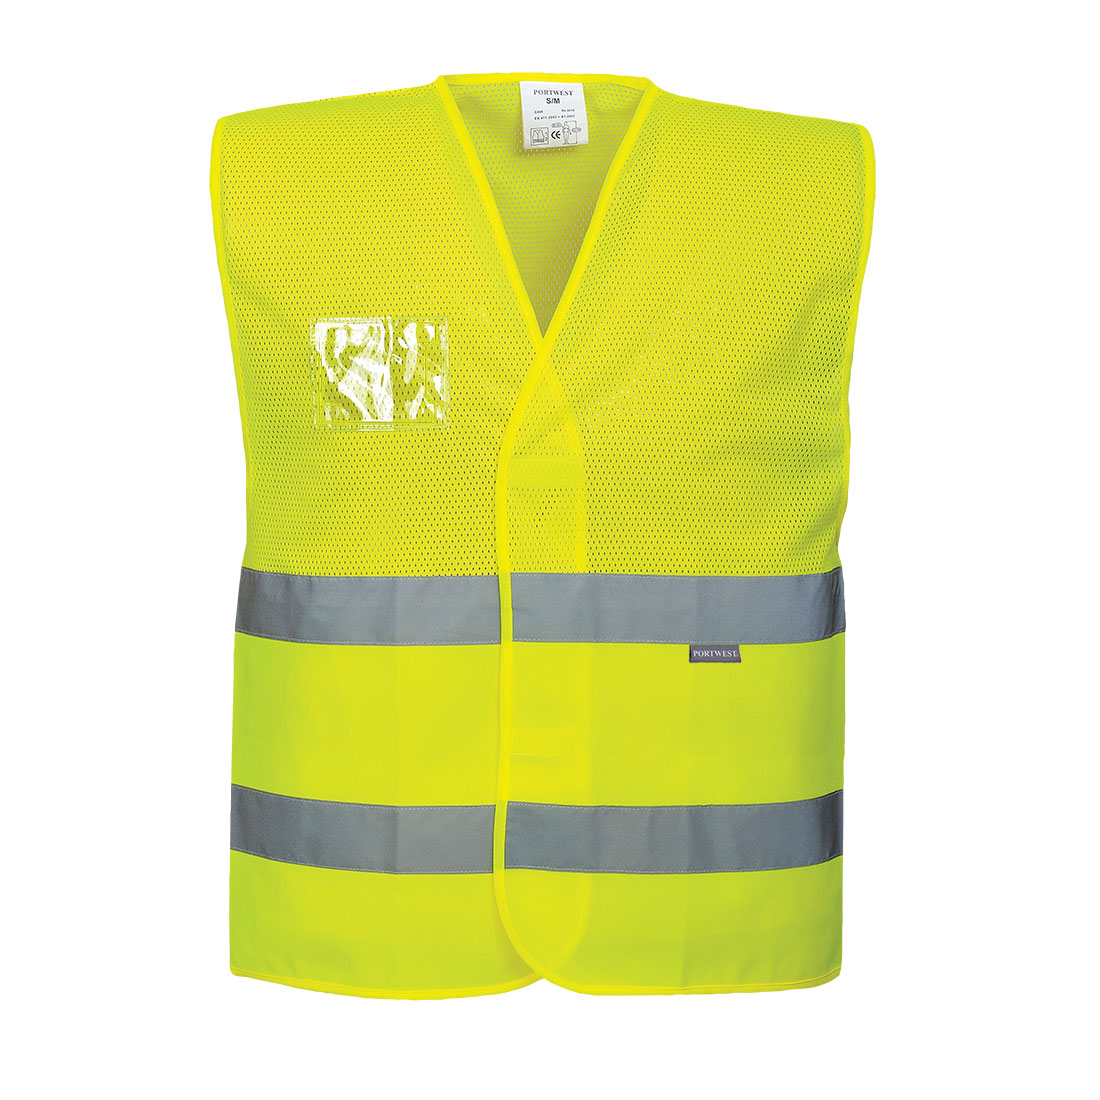 Portwest C375 Hi-Visibility Yellow Hi-Vis Zipped Vest sz S Zip Reflective 